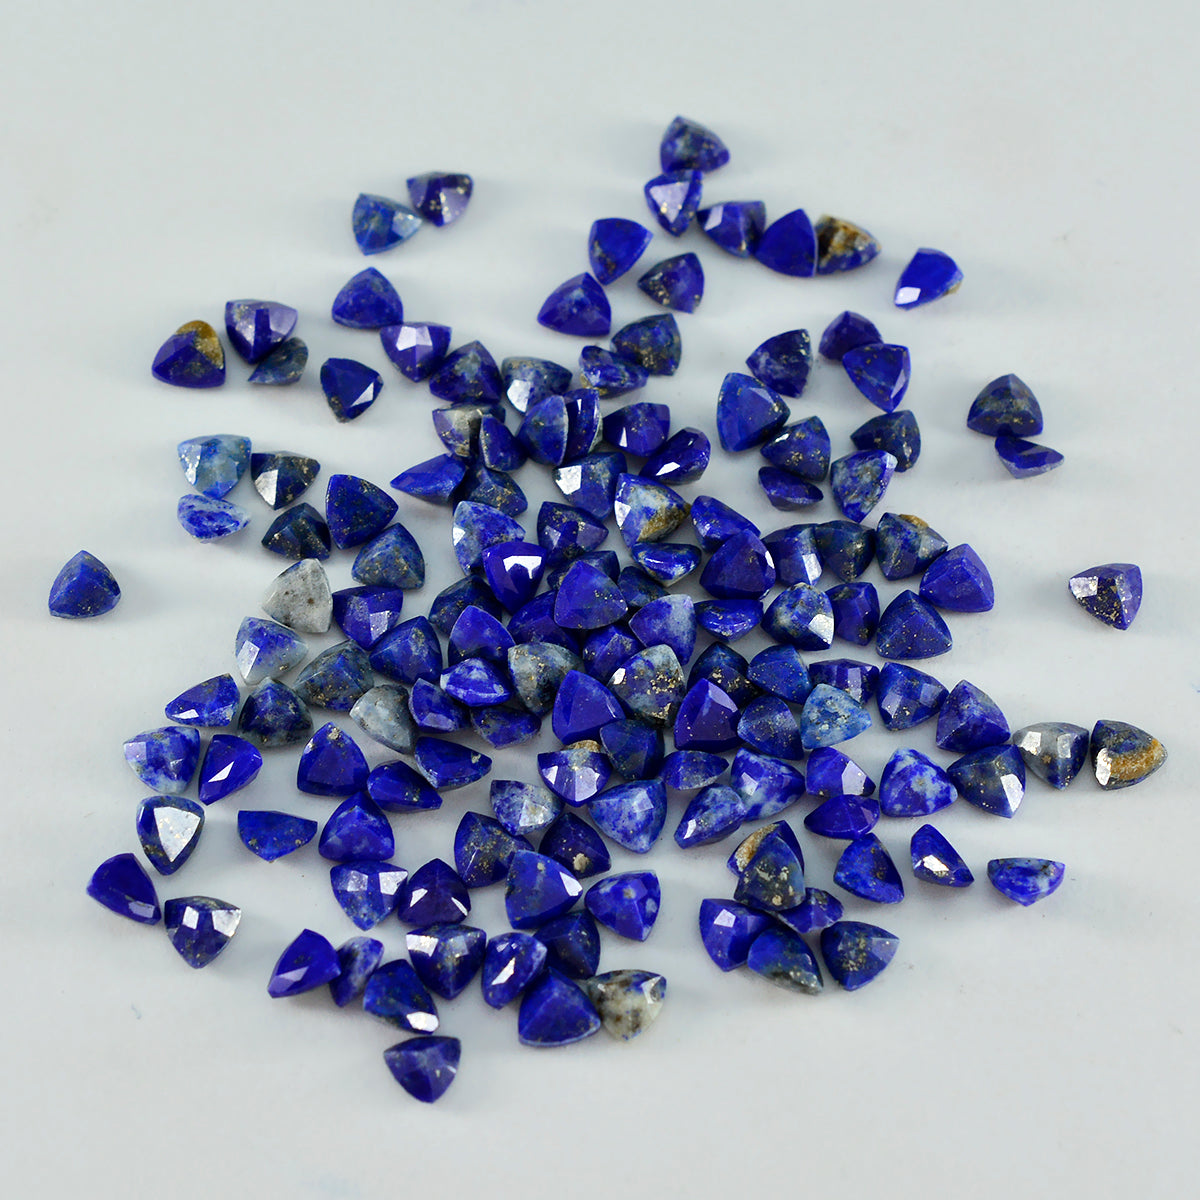 riyogems 1 шт. натуральный синий лазурит ограненный 4x4 мм форма триллиона сладкий качественный камень